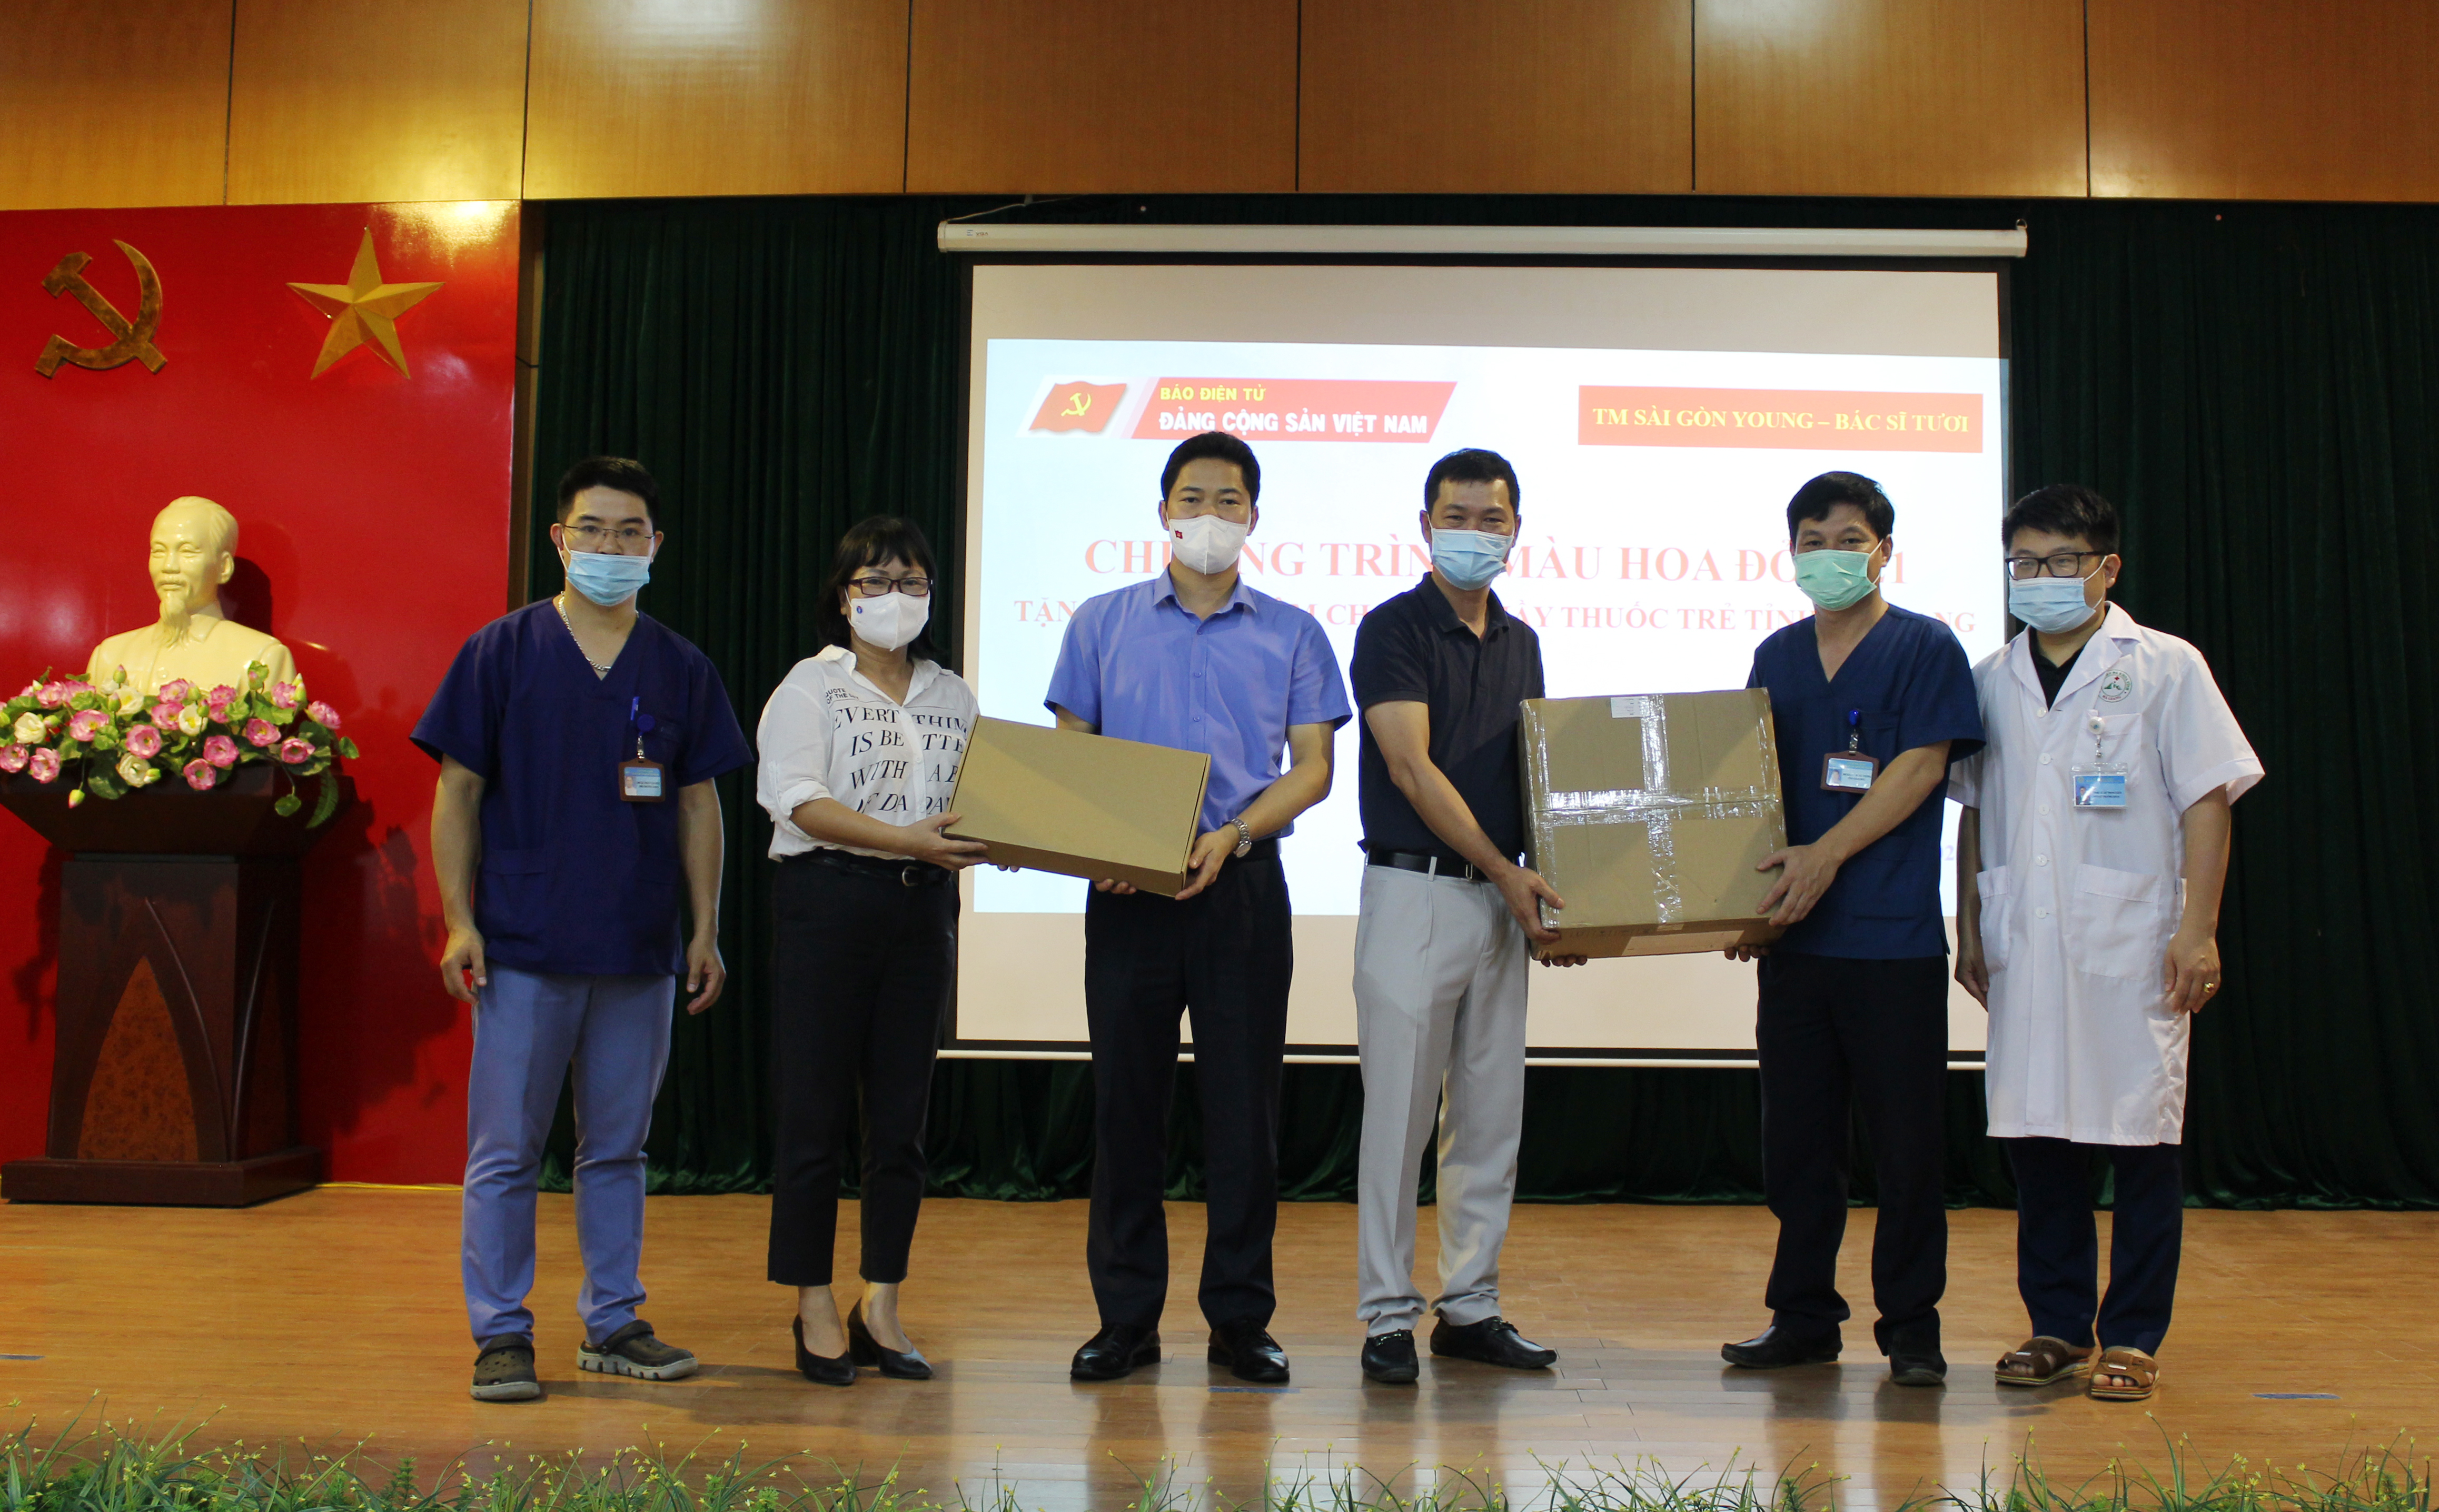 Đồng chí Đỗ Thị Thu Hiên, Phó Tổng biên tập Báo điện tử Đảng Cộng sản Việt Nam trao tặng máy siêu âm xách tay cho Hội Thầy thuốc trẻ tỉnh Hà Giang